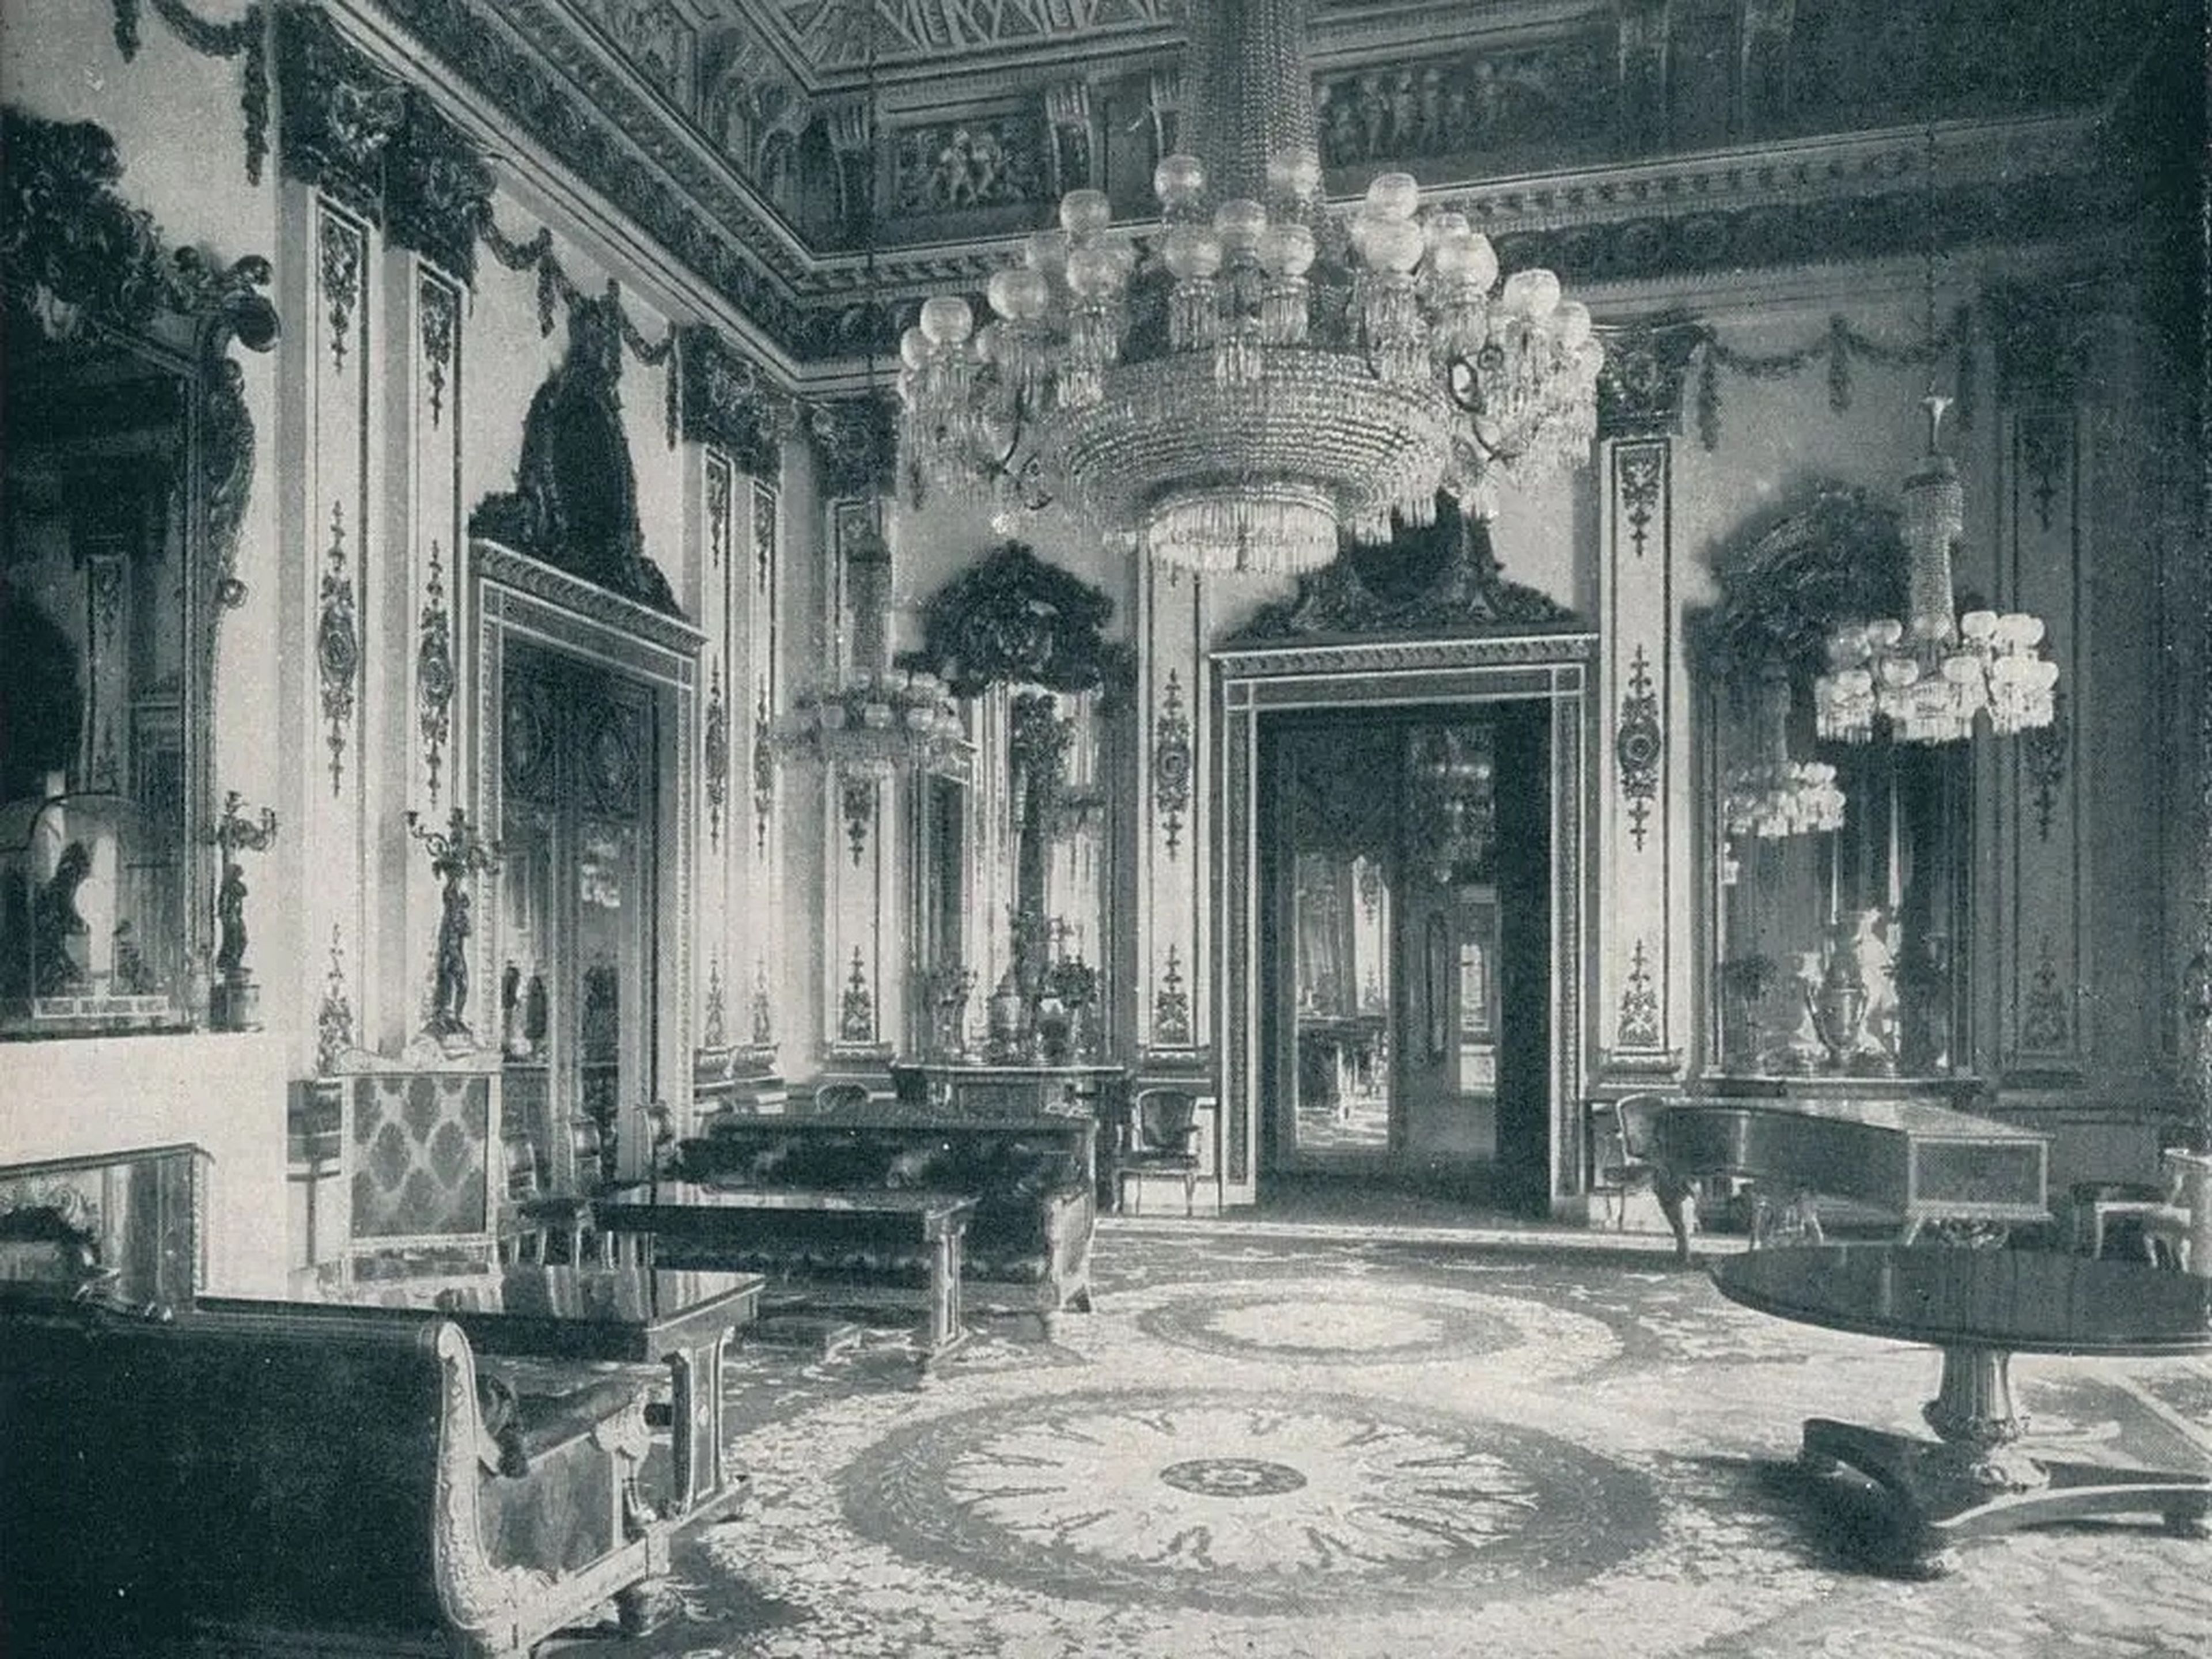 La habitación White Drawing en Buckingham, 1901.